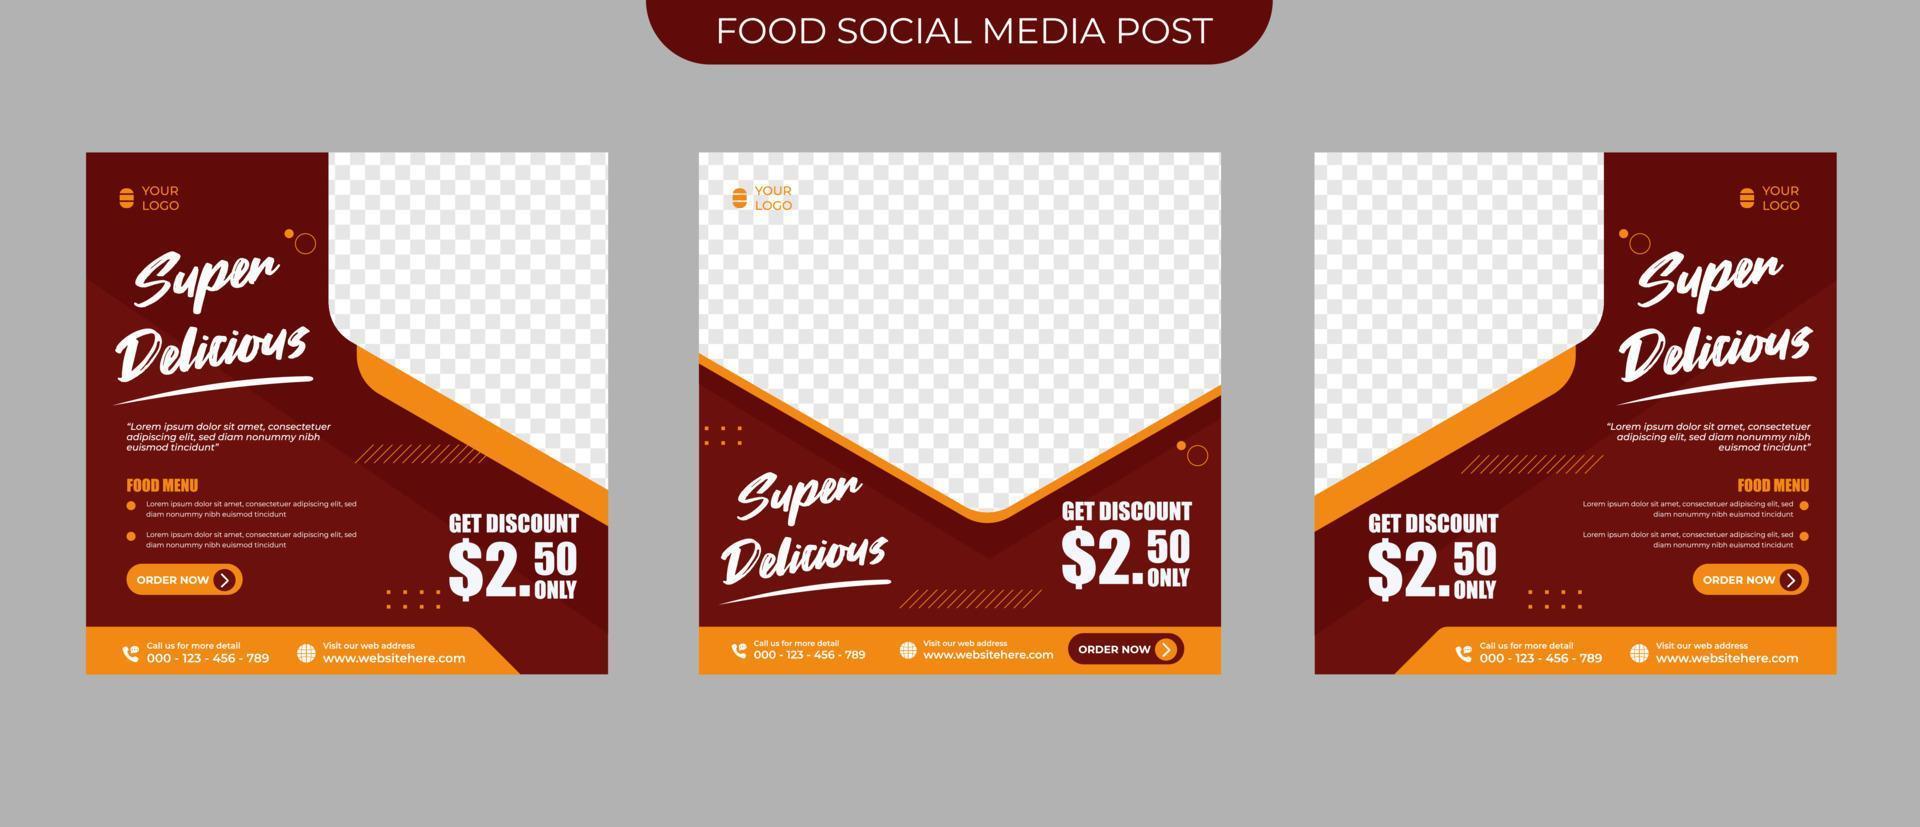 conceito de promoção de menu de comida de restaurante para conjunto de banner de postagem de mídia social editável e modelo de vetor quadrado de folheto